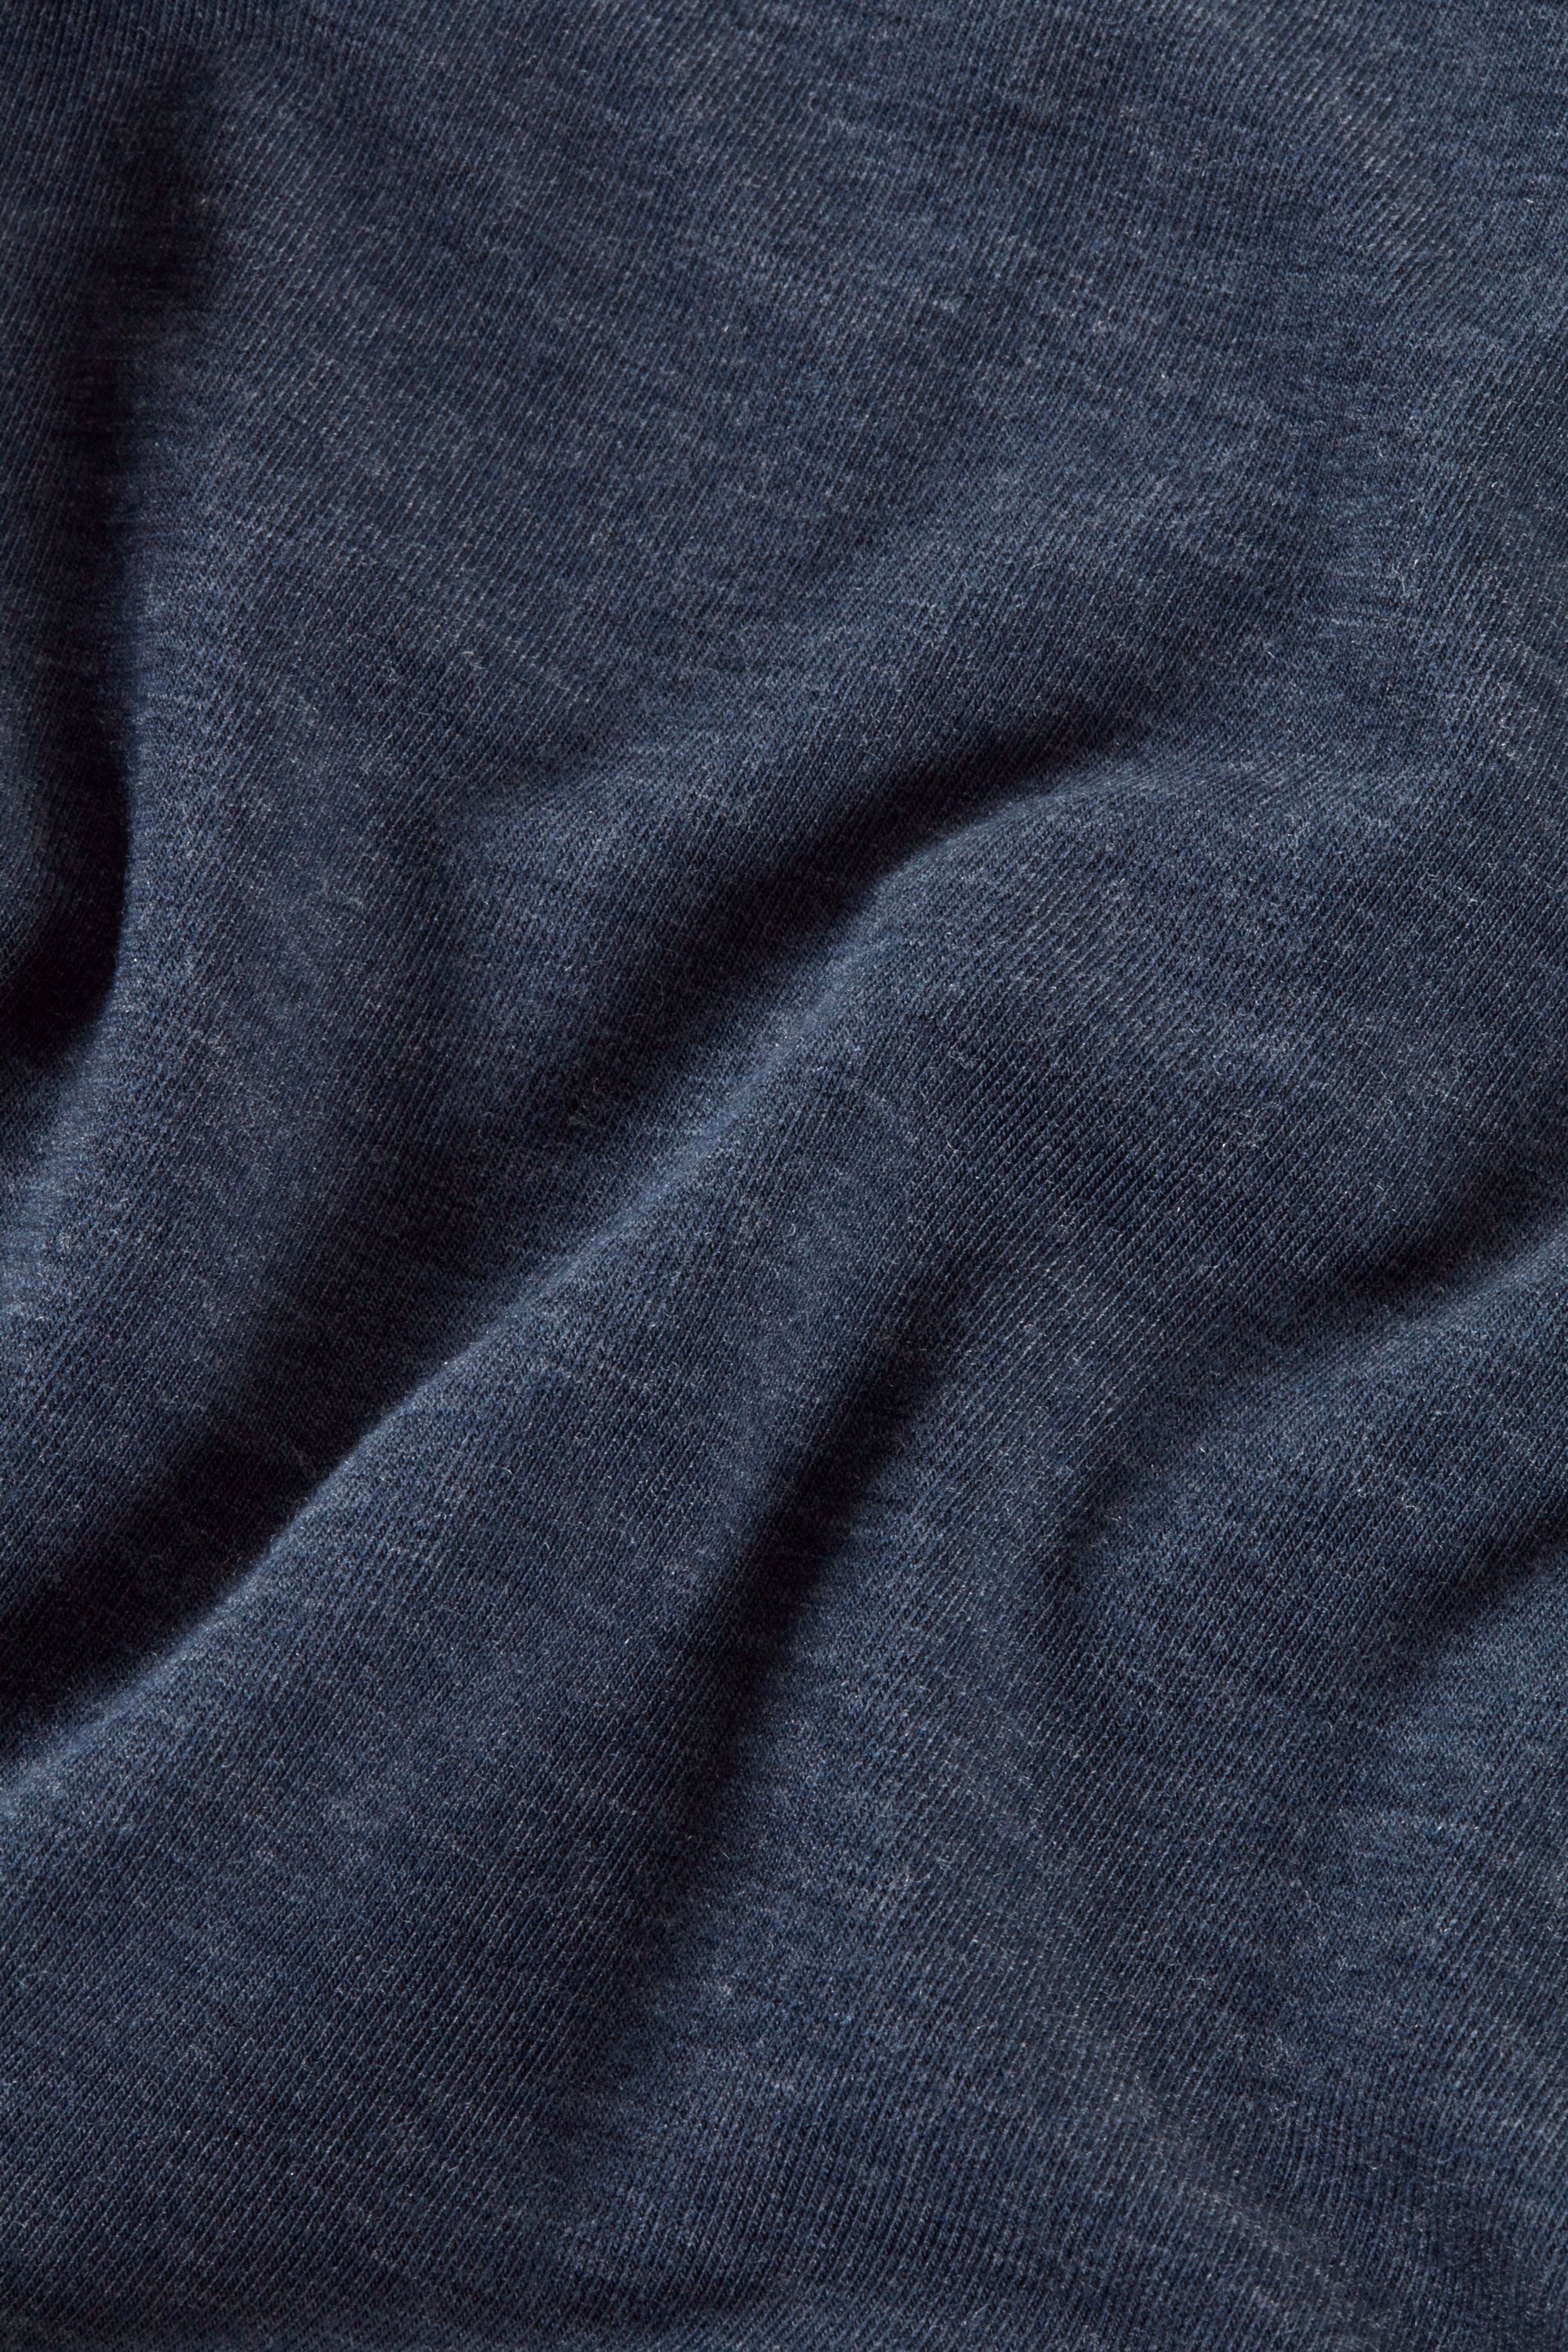 Tadasana Short Sleeve T-Shirt, Blue